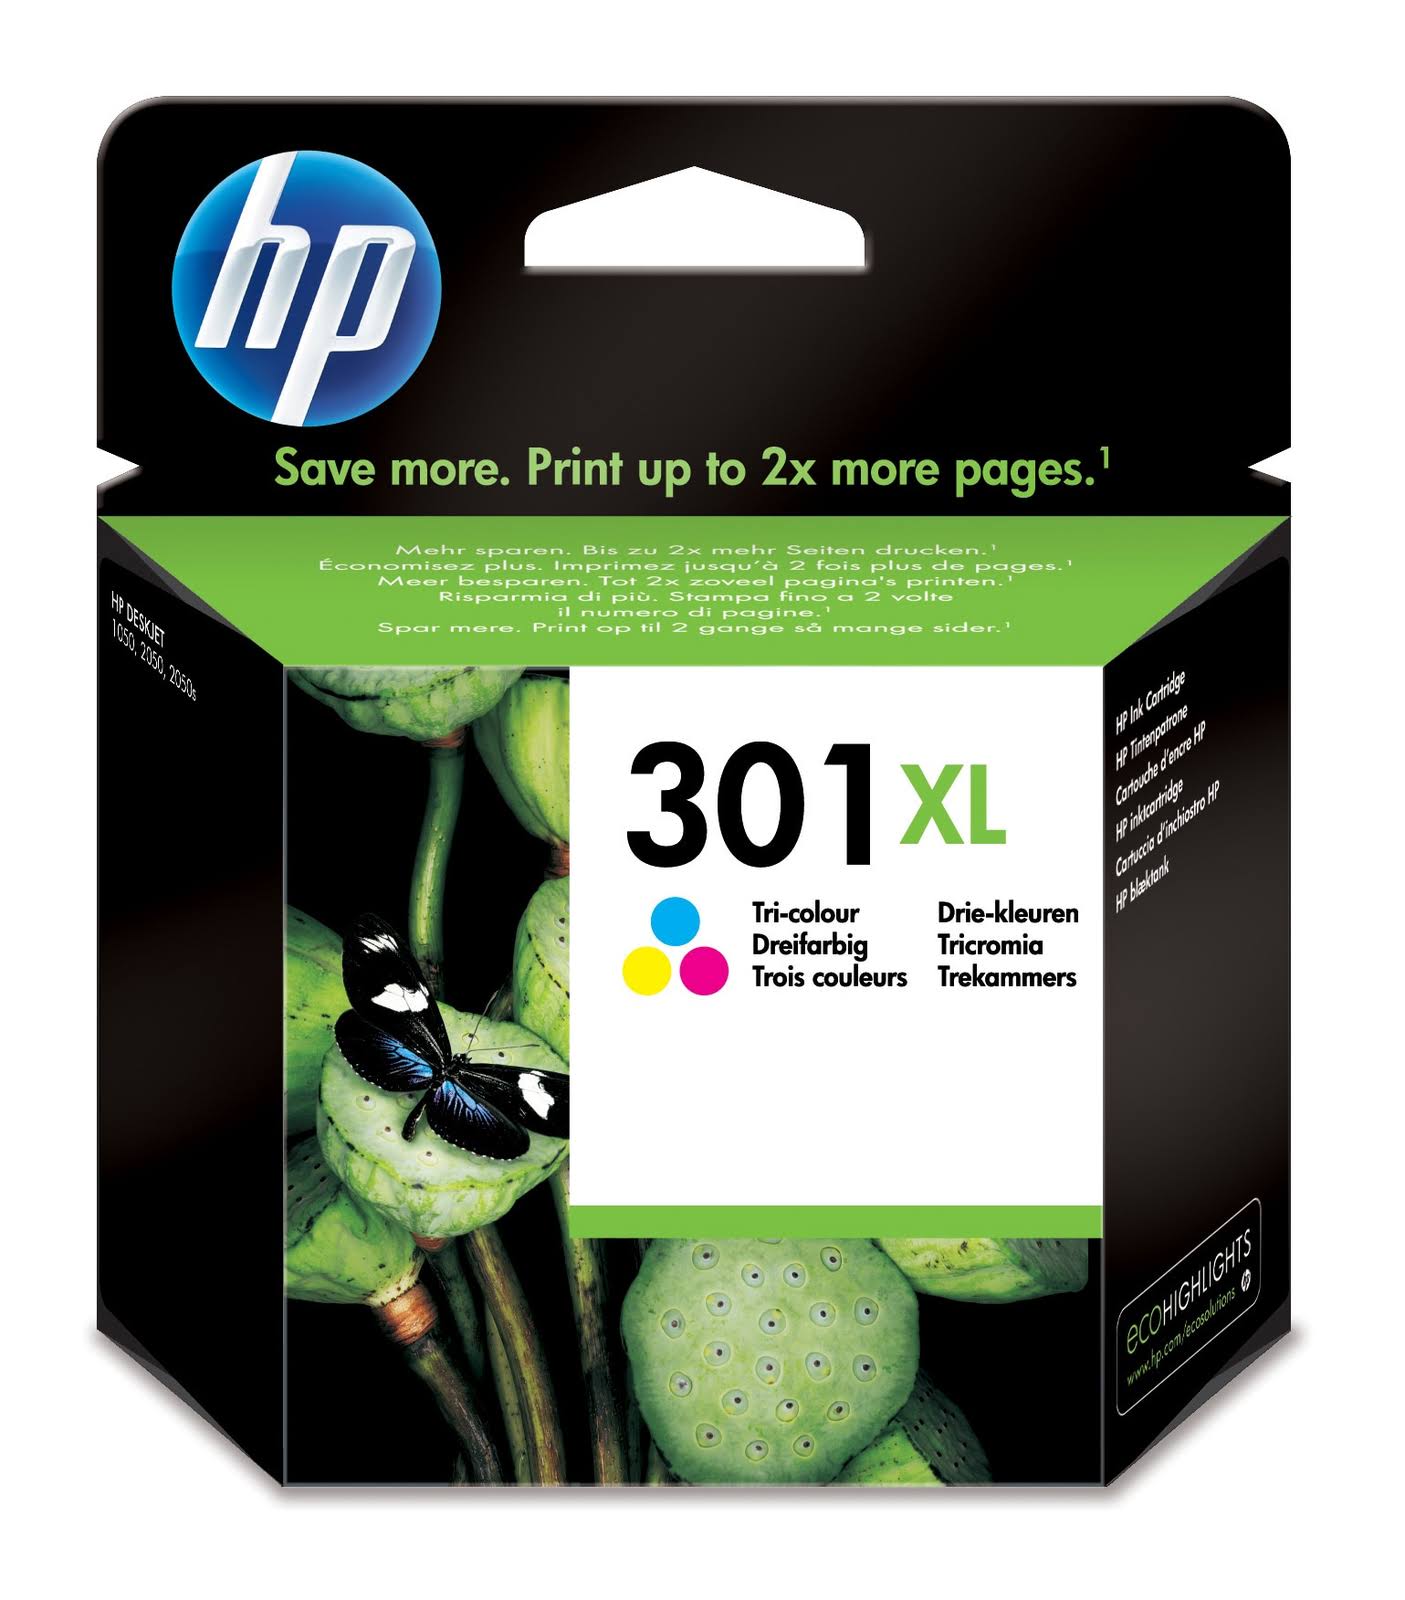 HP 301XL Printer Ink Cartridge - Tricolour